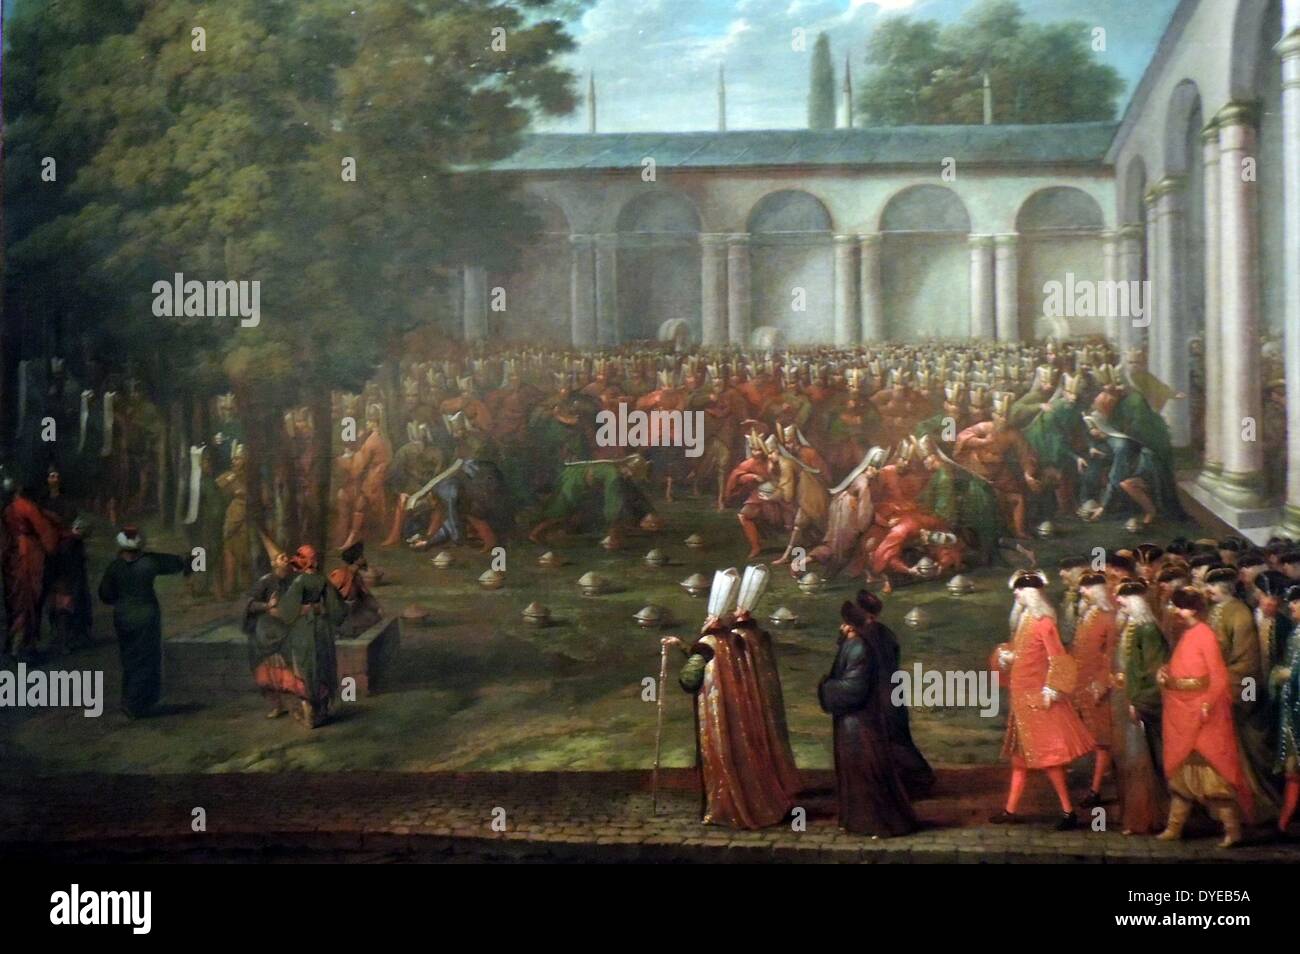 Calkoen Cornelio sul suo modo al suo pubblico con il Sultano Ahmed III da Jean Baptiste Vanmour (1671-1737) olio su tela, c 1727-1730. Calkoen udienza con il Sultano Ahmed III ha avuto luogo il 14 settembre 1727 e ha seguito un protocollo rigoroso. Qui possiamo vedere il corteo, disarmati secondo la convenzione, di entrare nel secondo cortile del Palazzo Topkapi. Gli spettatori sono stati sempre tenuto il giorno che il janissaries, elite forza da combattimento, ha ricevuto la loro retribuzione. Proprio come Calkoen entra, i soldati lunge clamorosamente a piatti a base di riso. Foto Stock